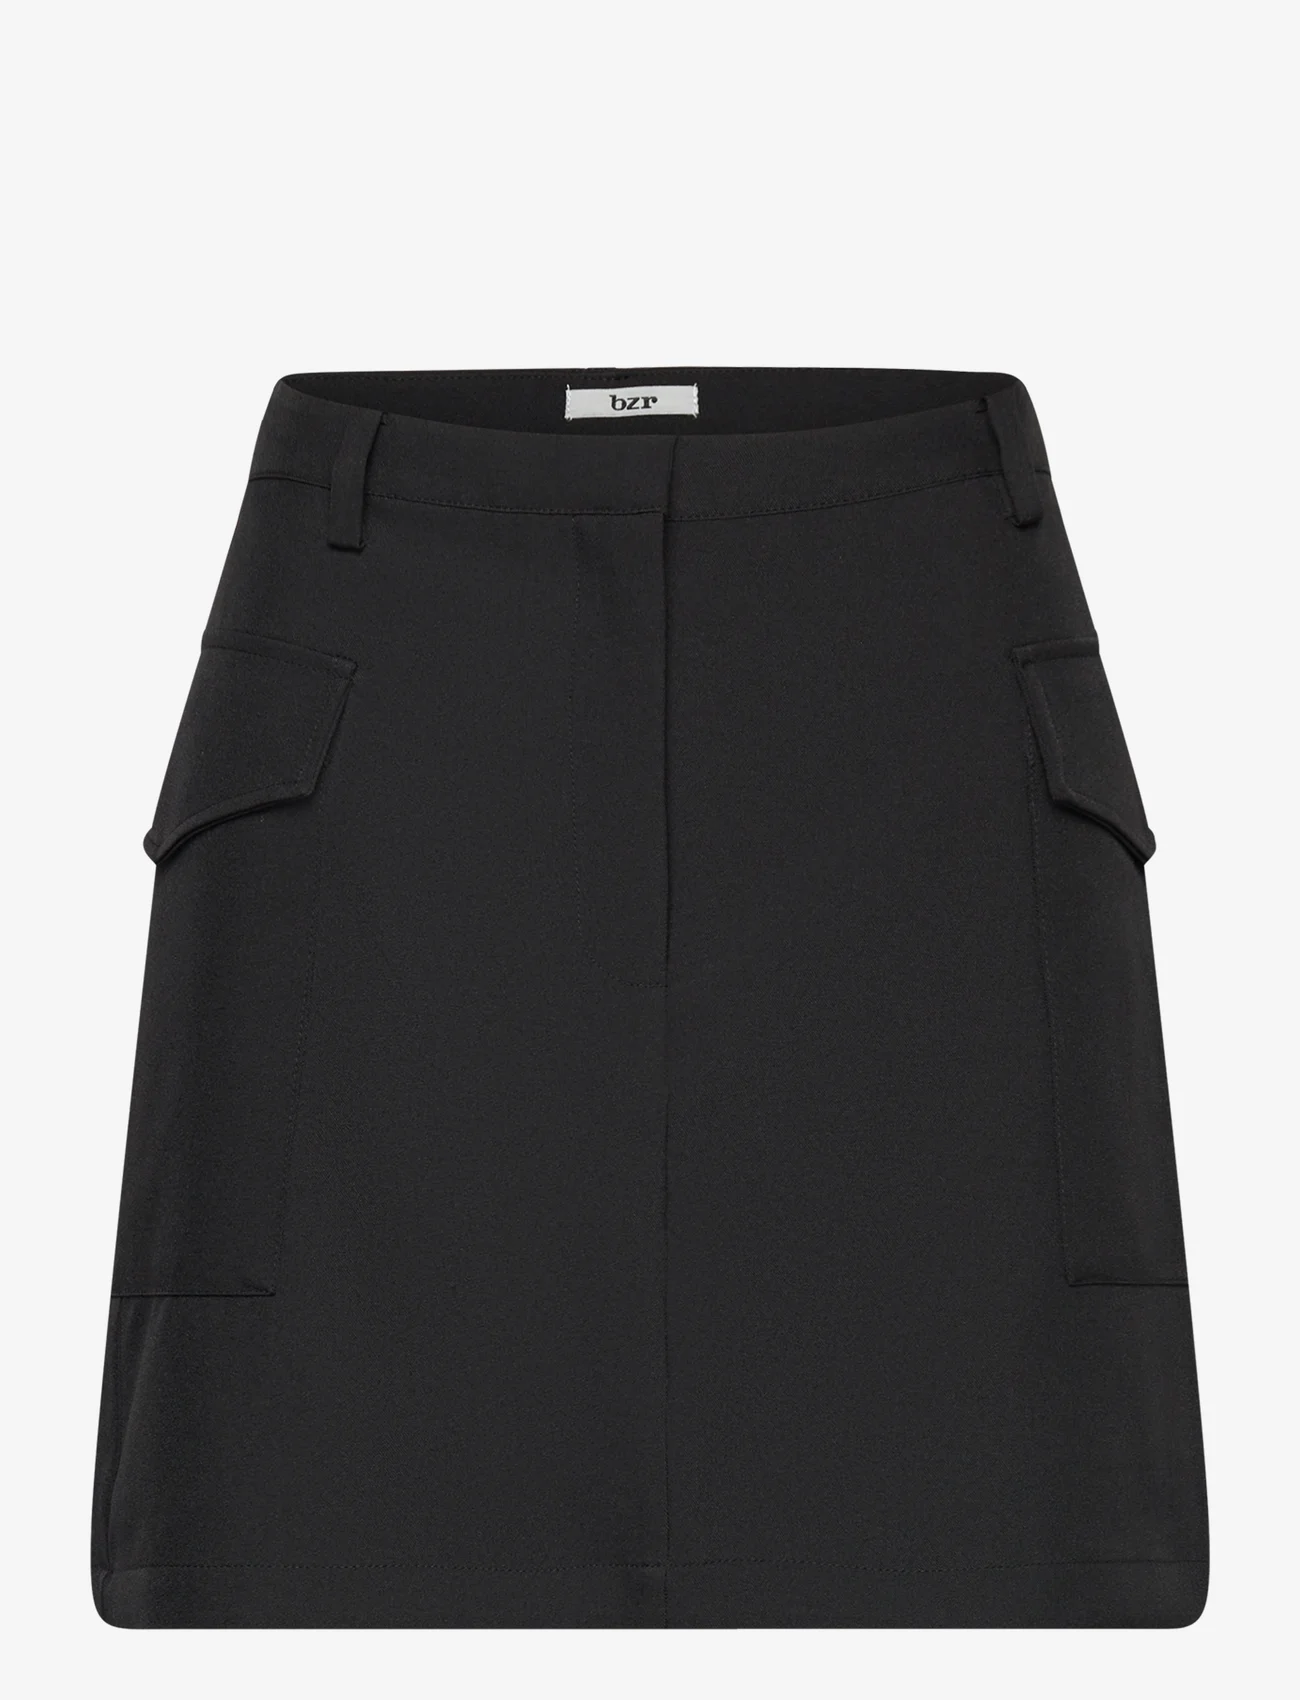 bzr - VibeBZCargo miniskirt - korte nederdele - black - 0